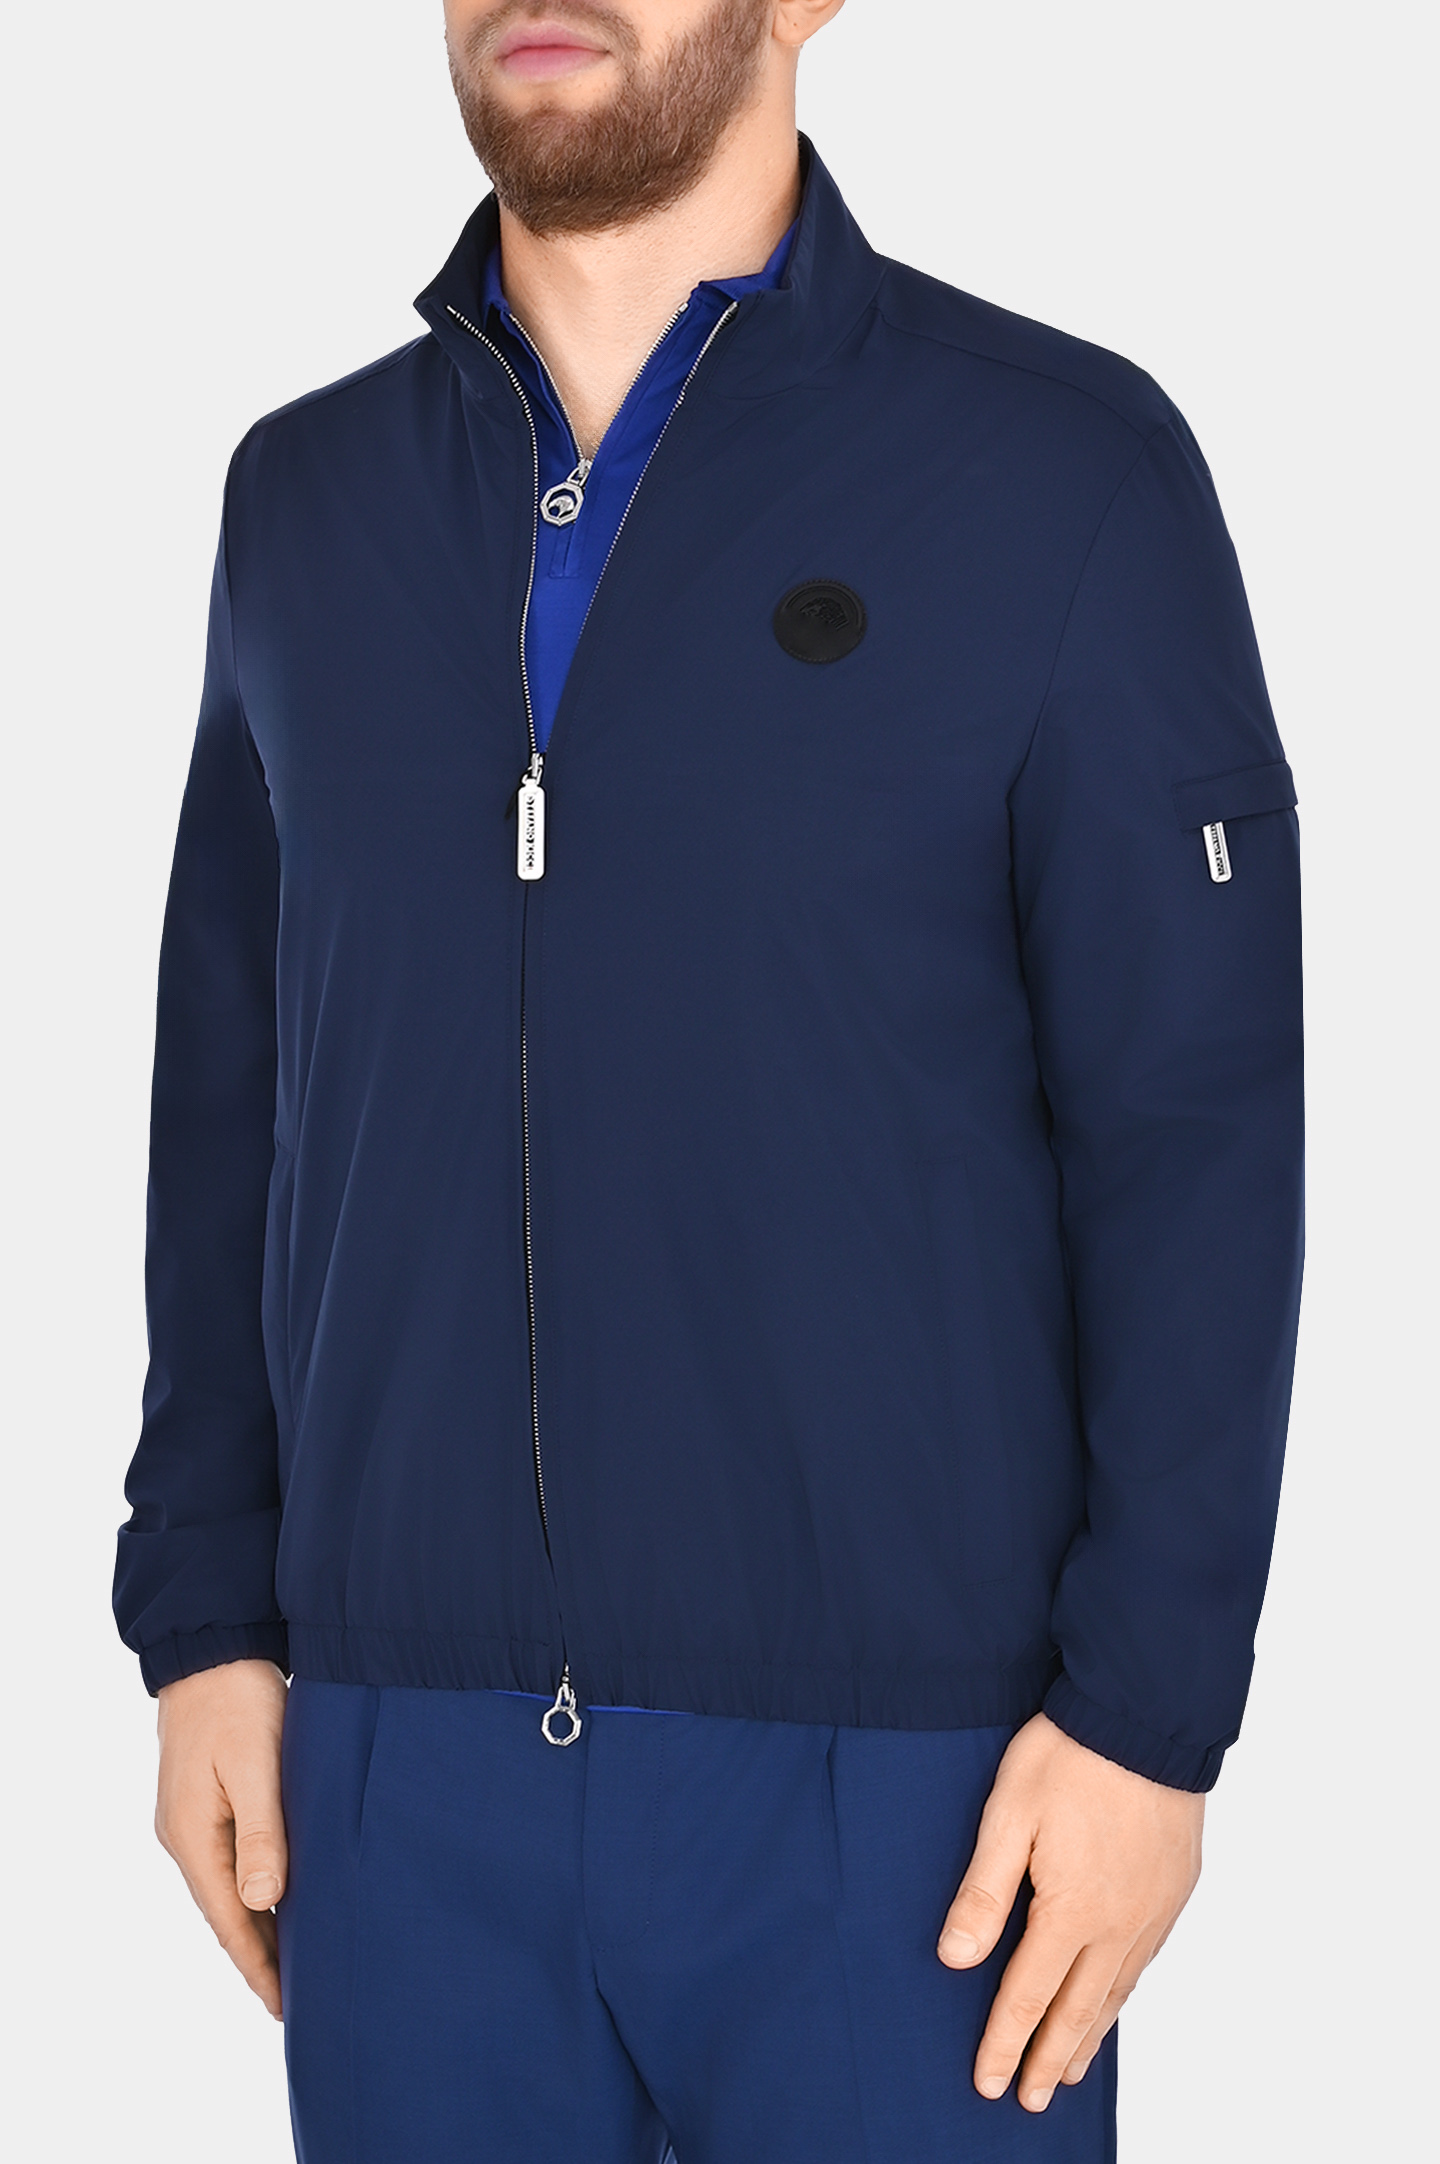 Куртка из полиэстера с логотипом STEFANO RICCI M6J4100010 PL001H/1/SAC64, цвет: Темно-синий, Мужской